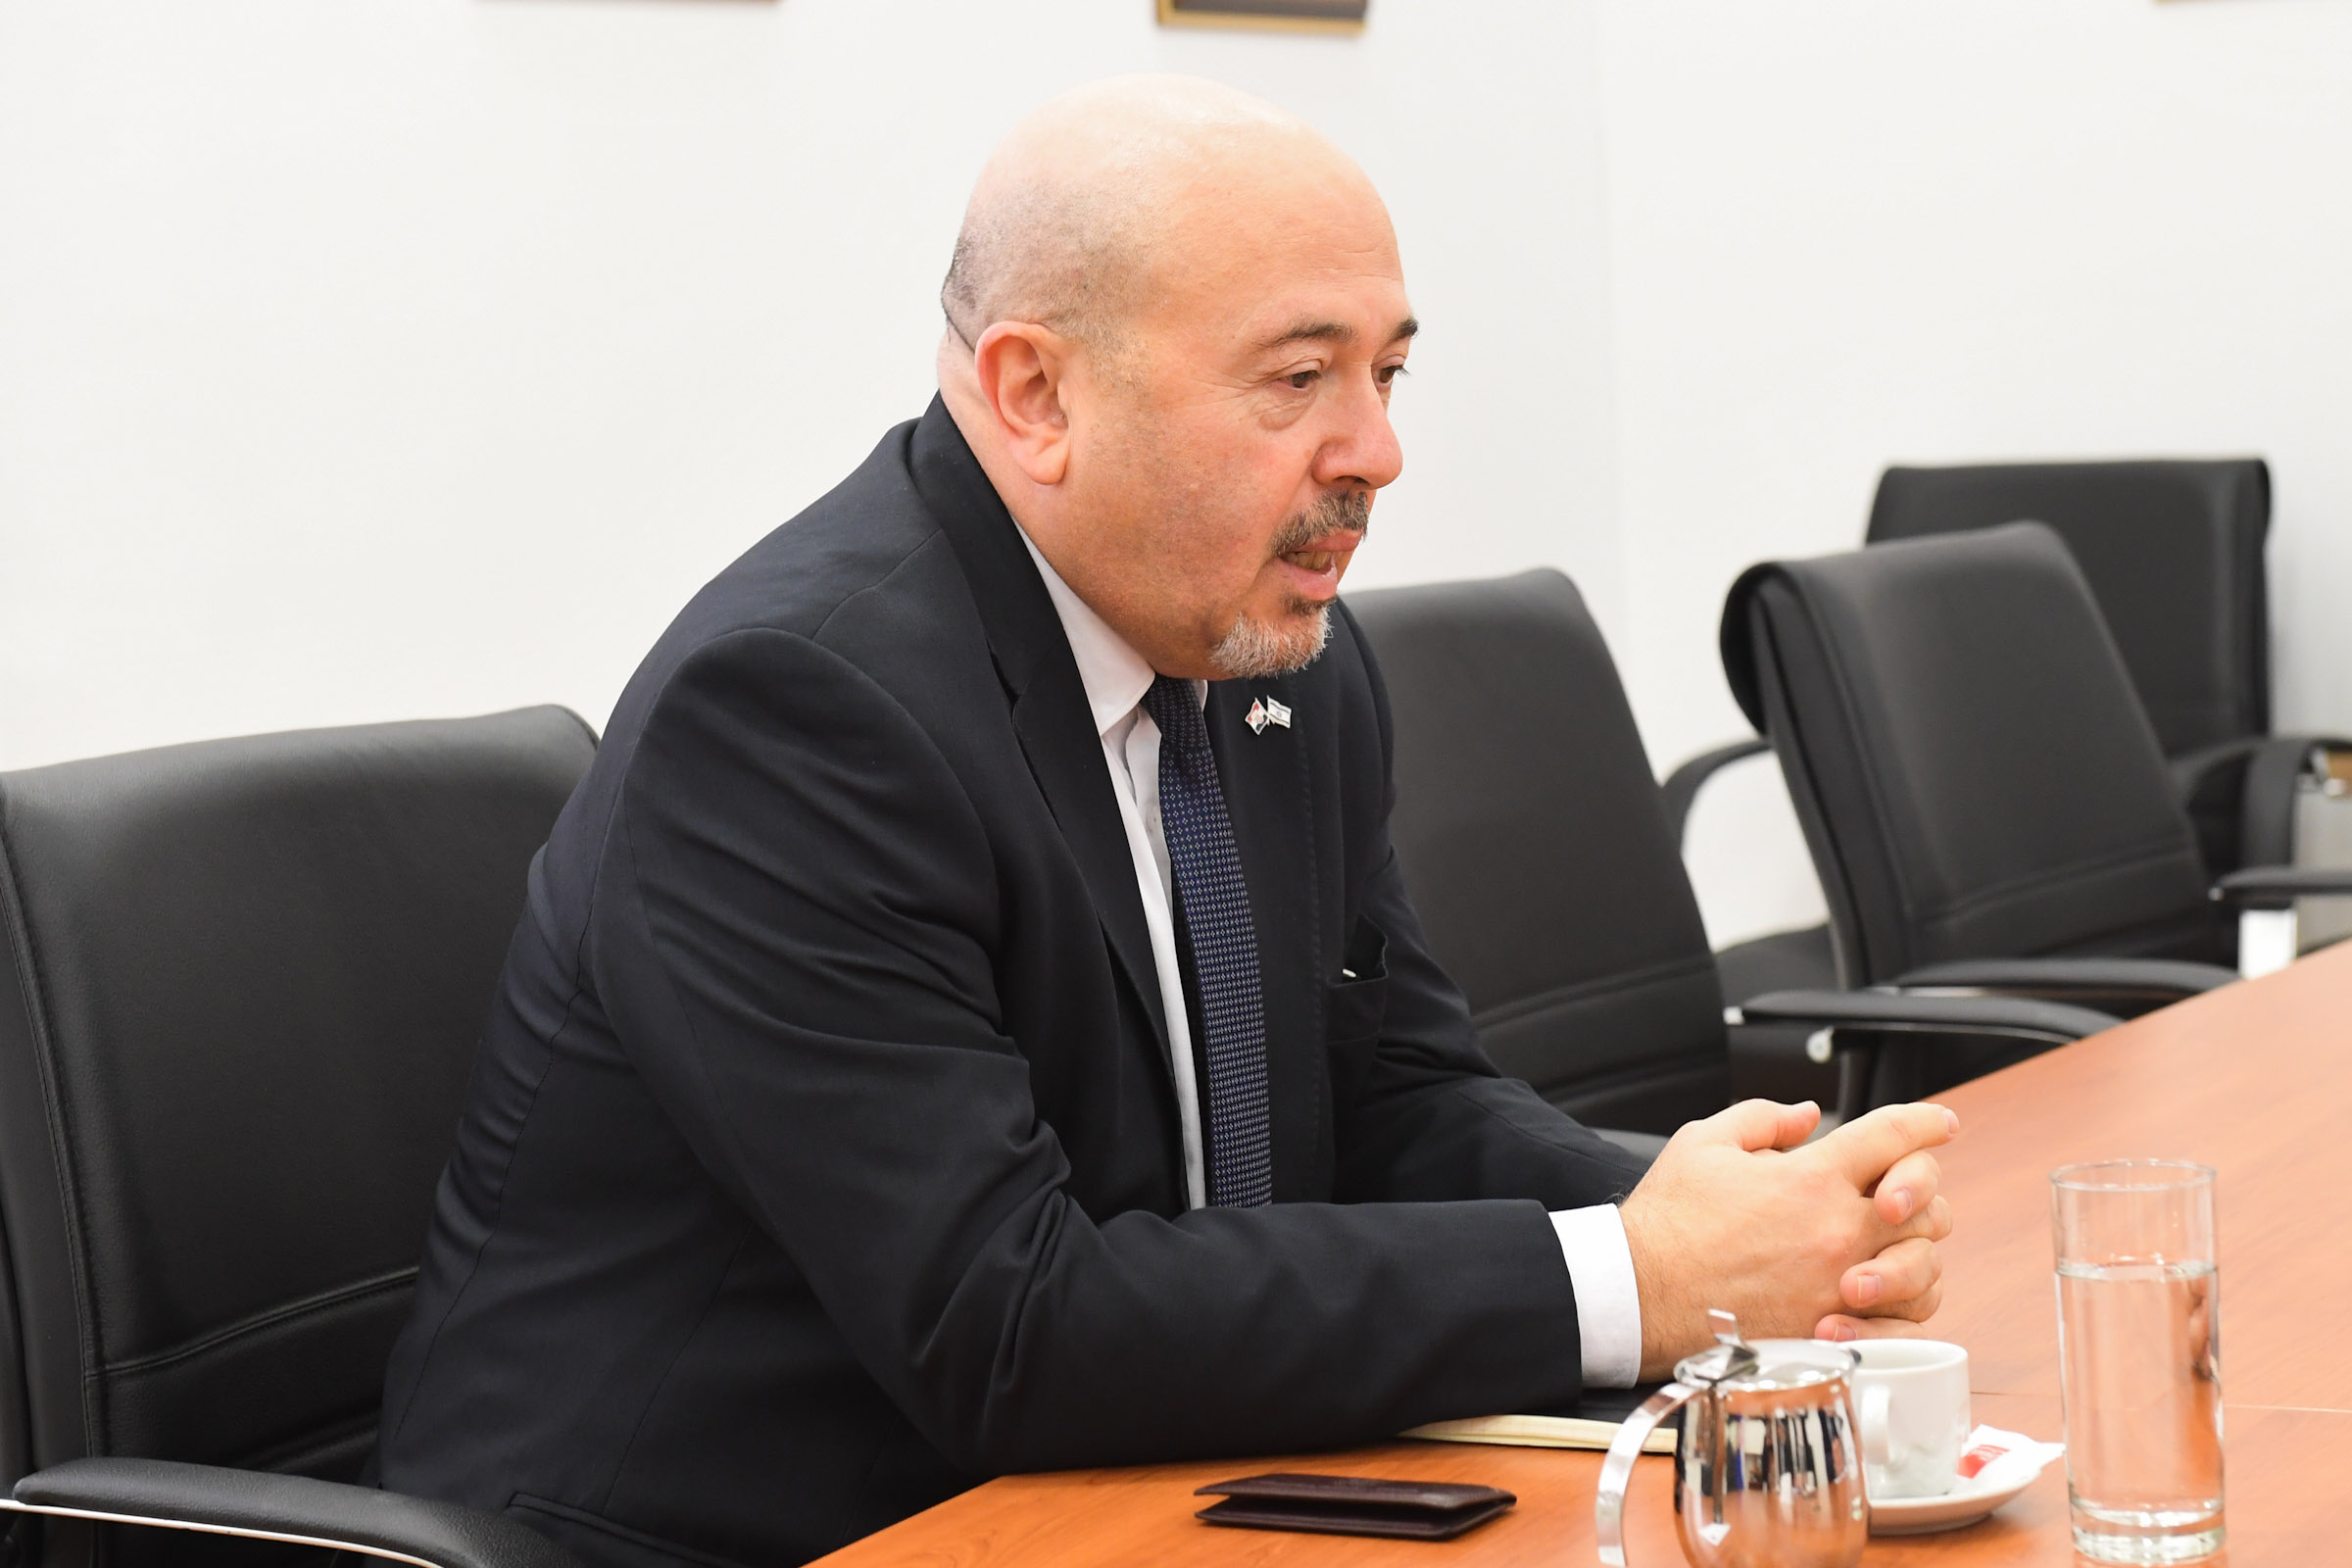 Ministar Banožić sastao se s novim veleposlanikom Izraela Korenom